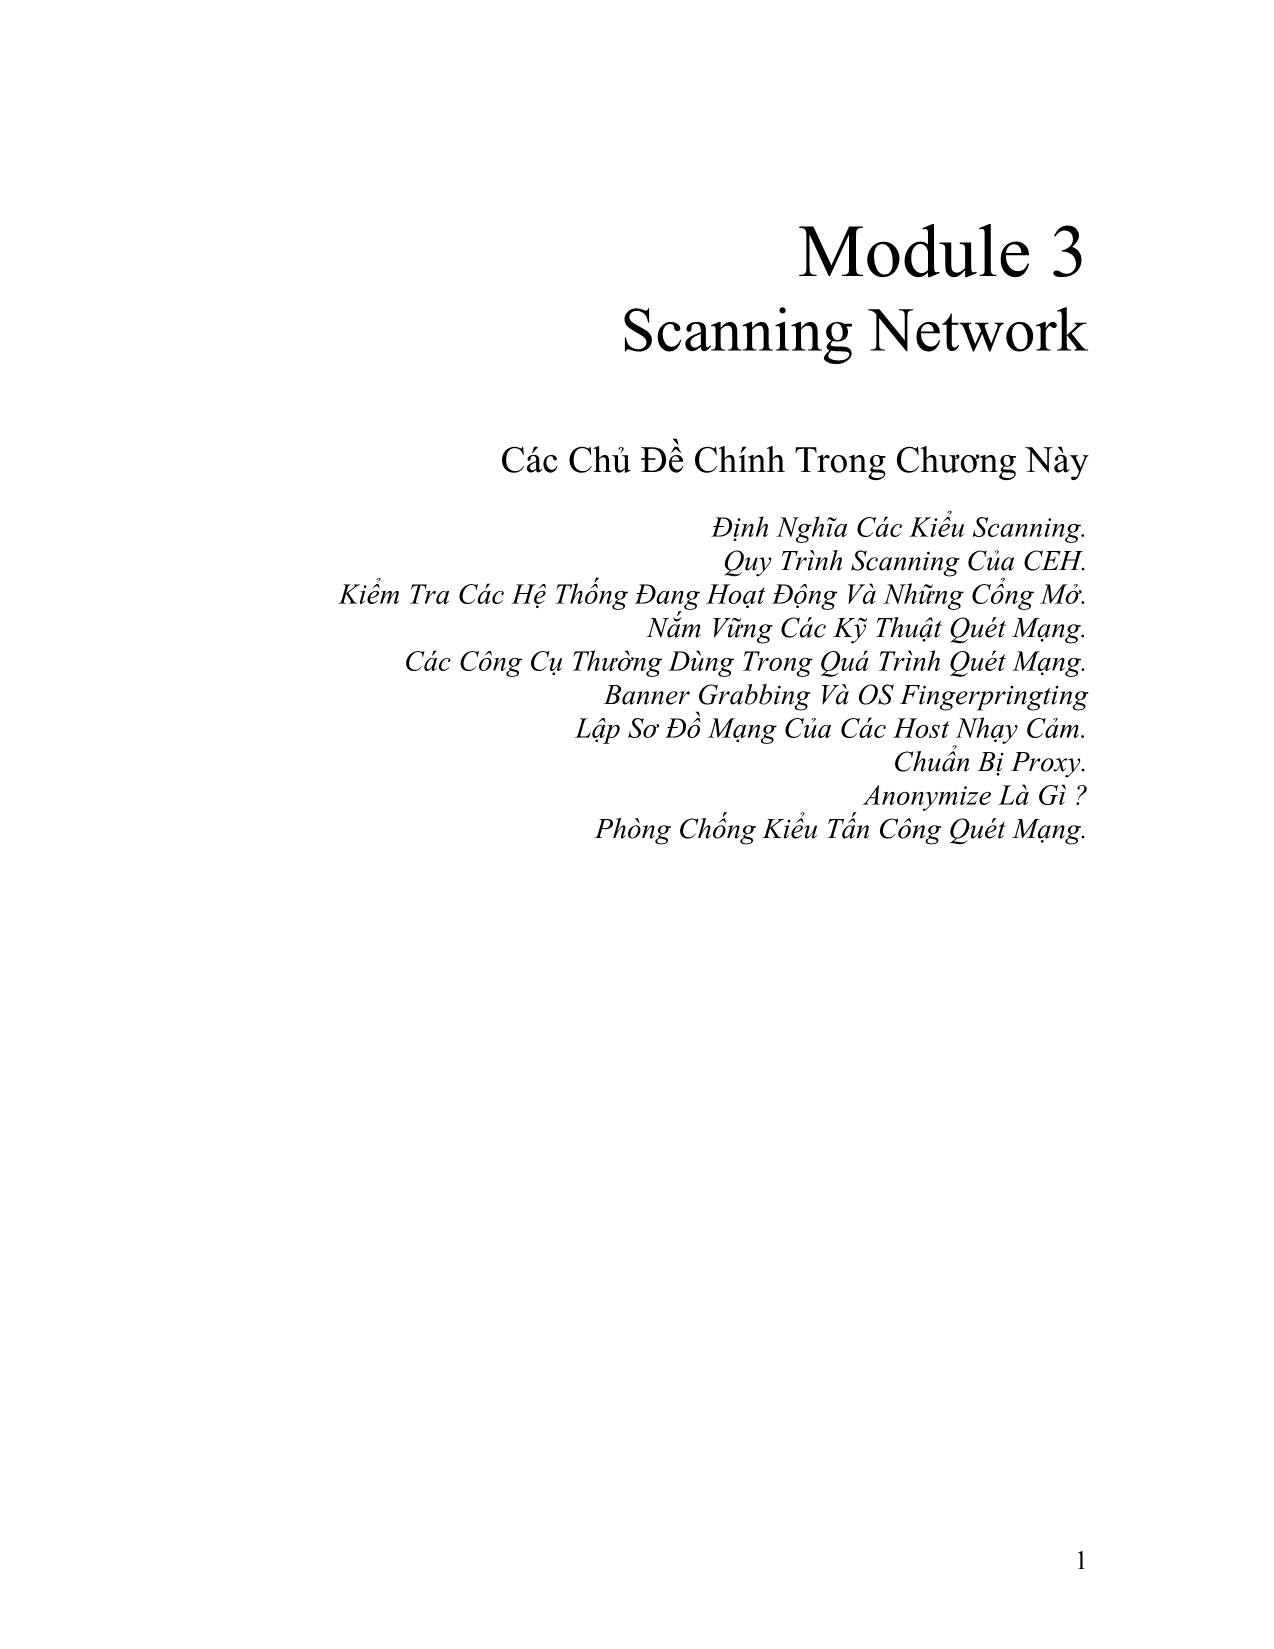 Module 3: Scanning Network trang 1